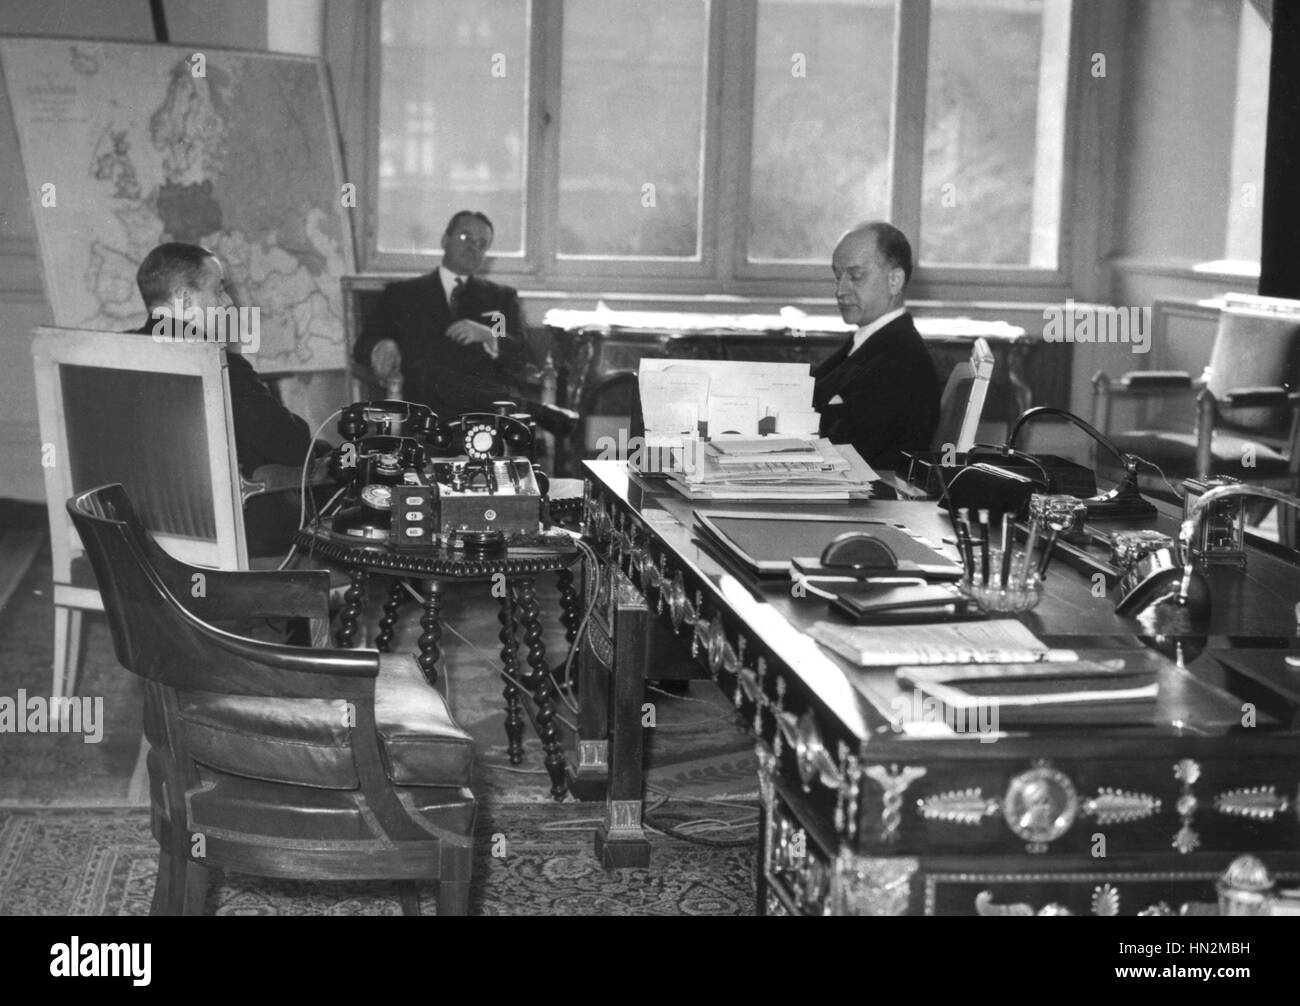 Parigi. Sumner Welles, seduta accanto alla mappa di Europa, discutendo con Paul Reynaud circa il destino futuro di Germania Marzo 1940 FRANCIA - SECONDA GUERRA MONDIALE Foto Stock